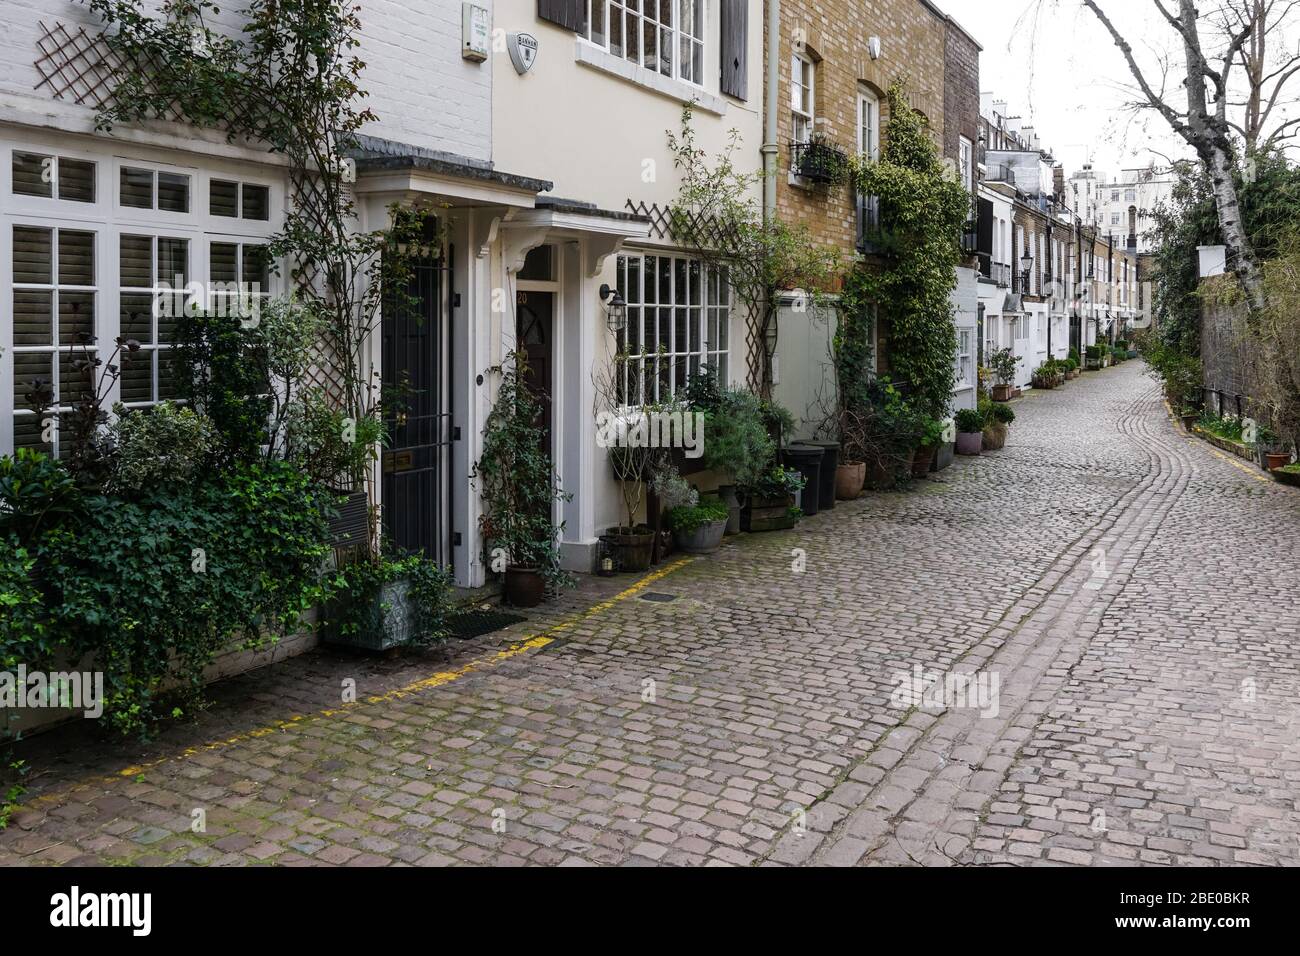 Propriétés résidentielles sur Kynance Mews pavés à South Kensington, Londres Angleterre Royaume-Uni Banque D'Images